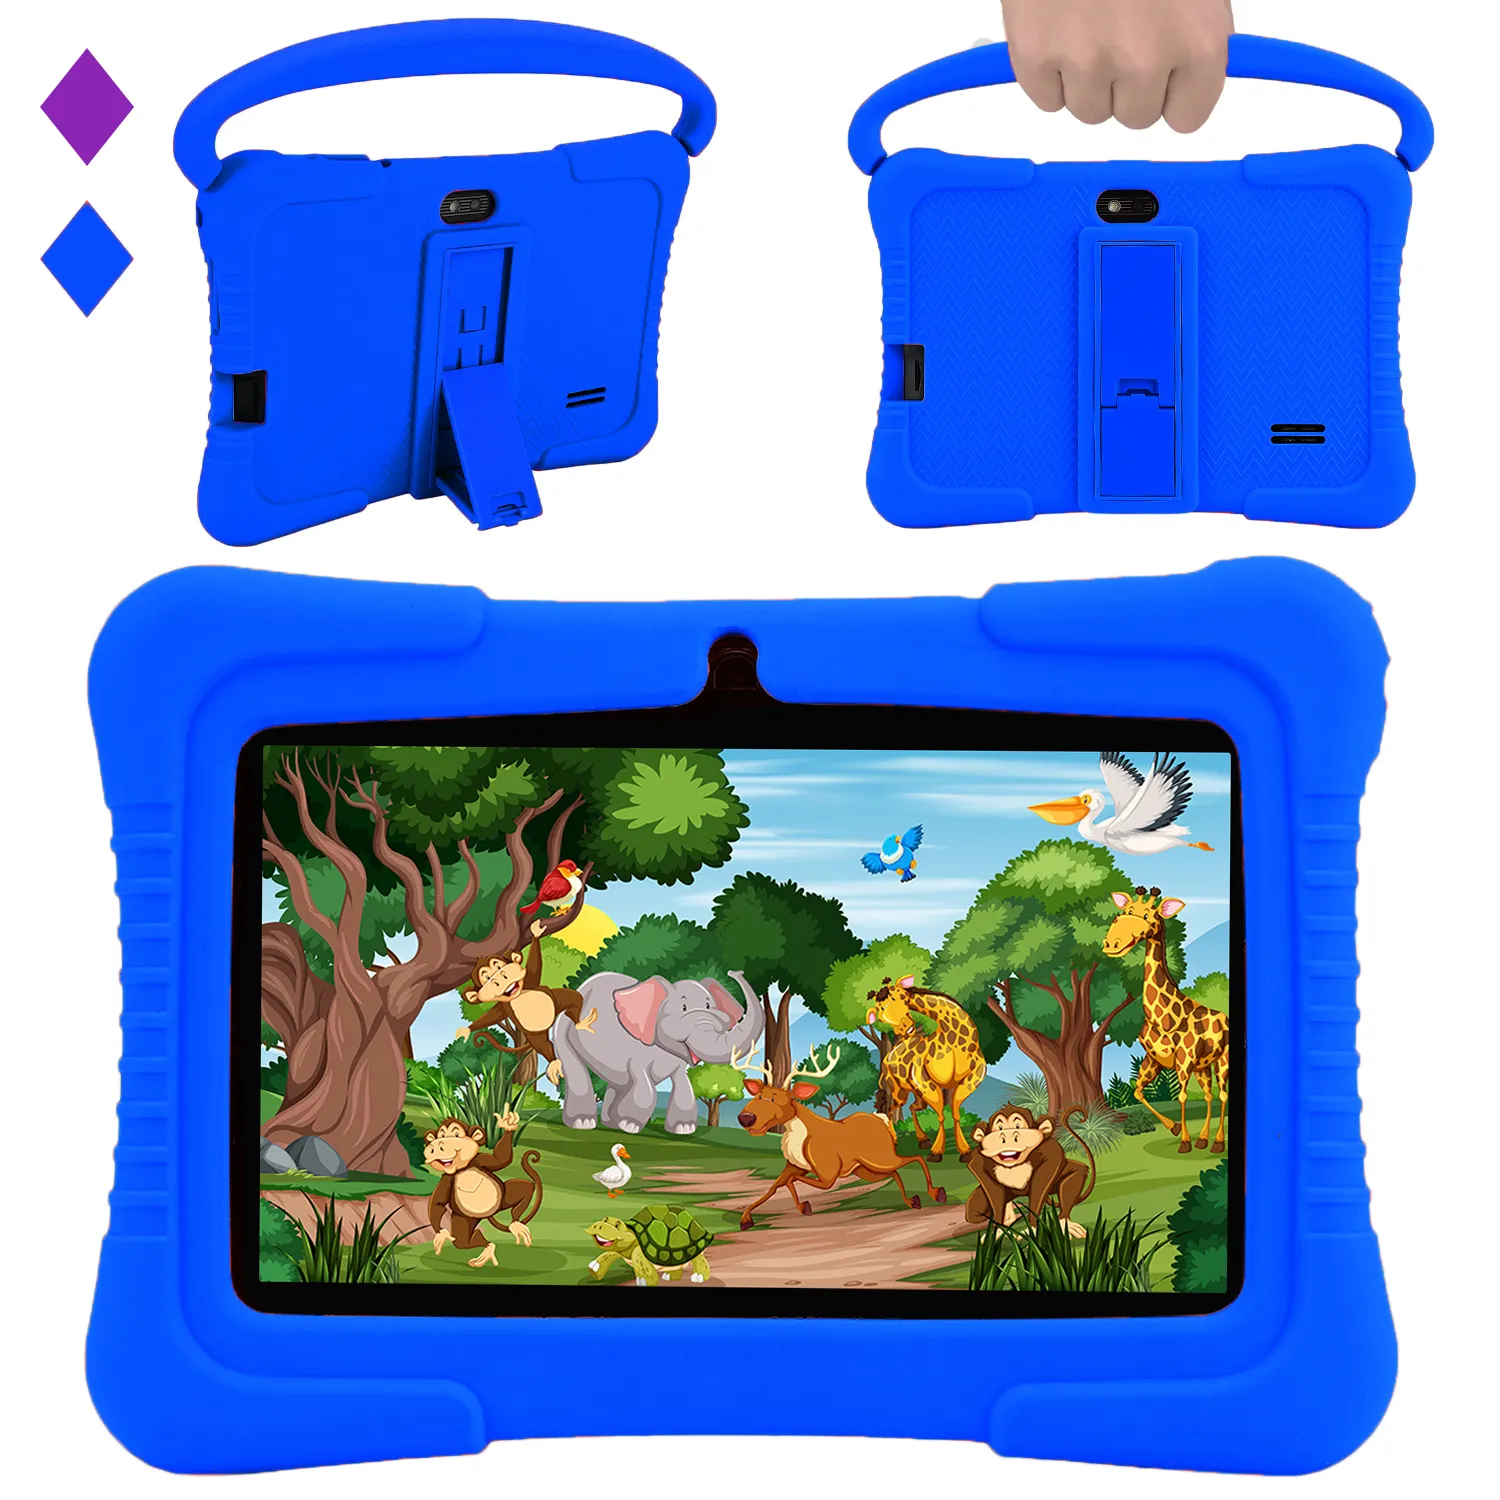 Veidoo trẻ em Tablet PC 7 inch Android Máy tính bảng cho trẻ em 2GB RAM 32GB lưu trữ Toddler tablet với IPS màn hình điều khiển cha mẹ